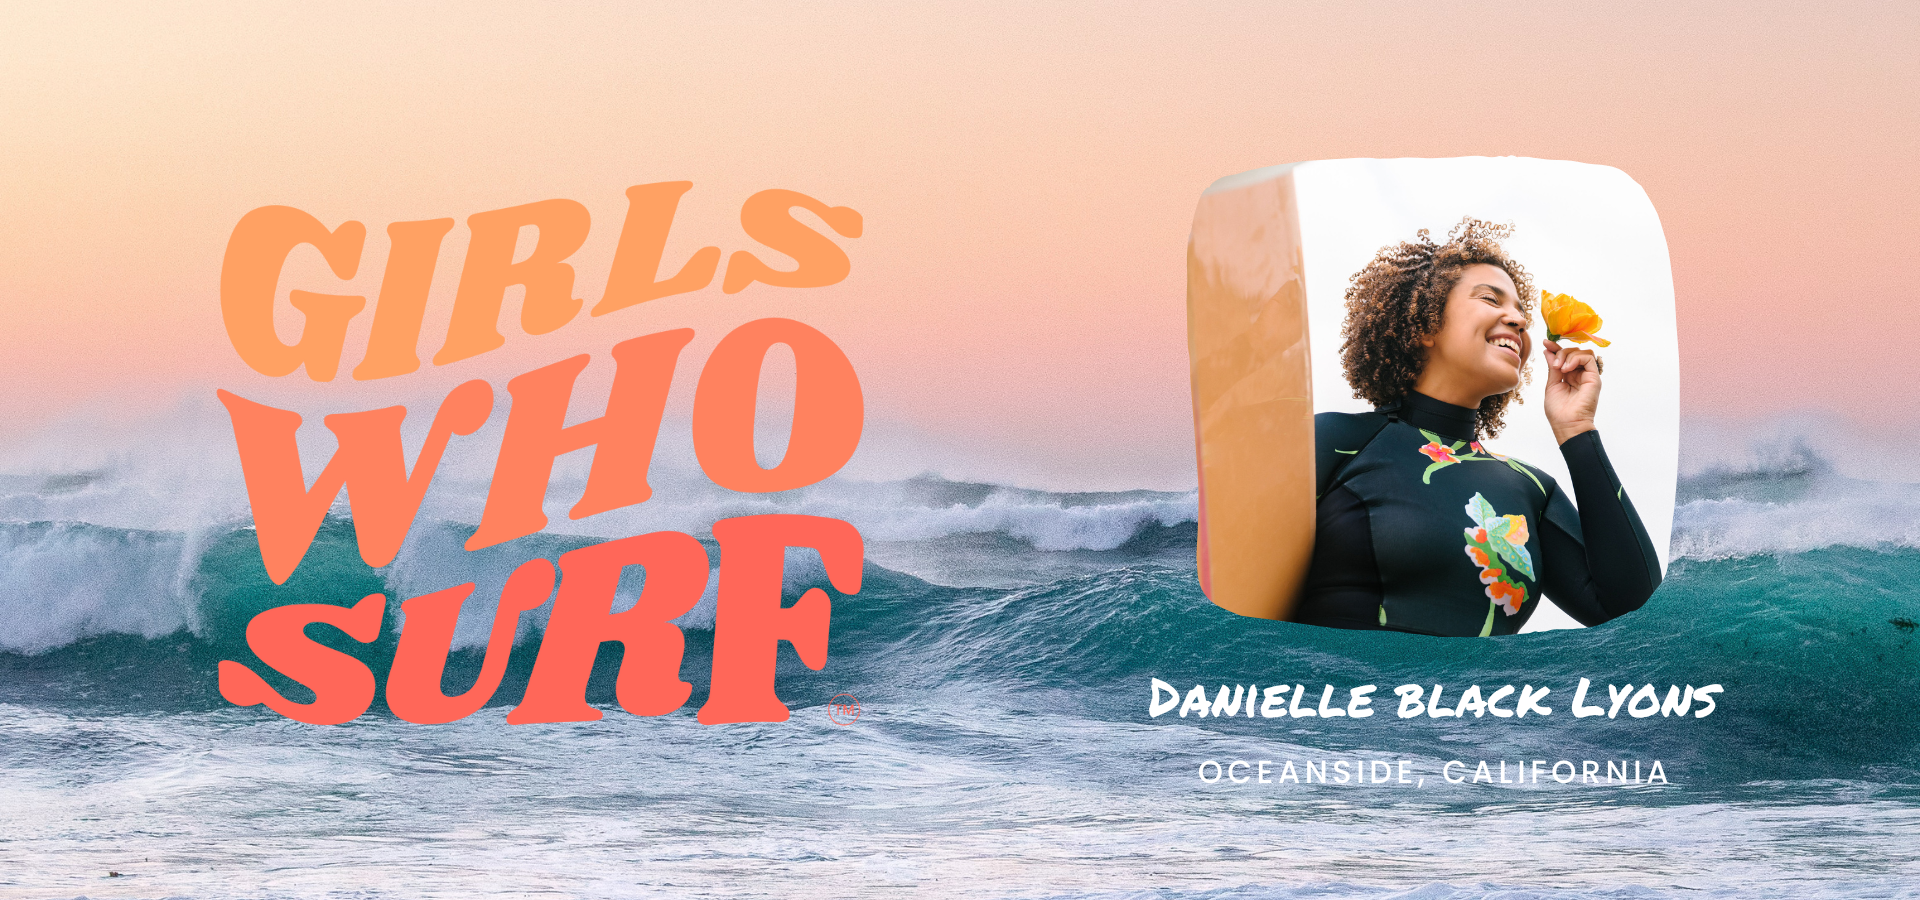 Girls Who Surf: Danielle Black Lyons